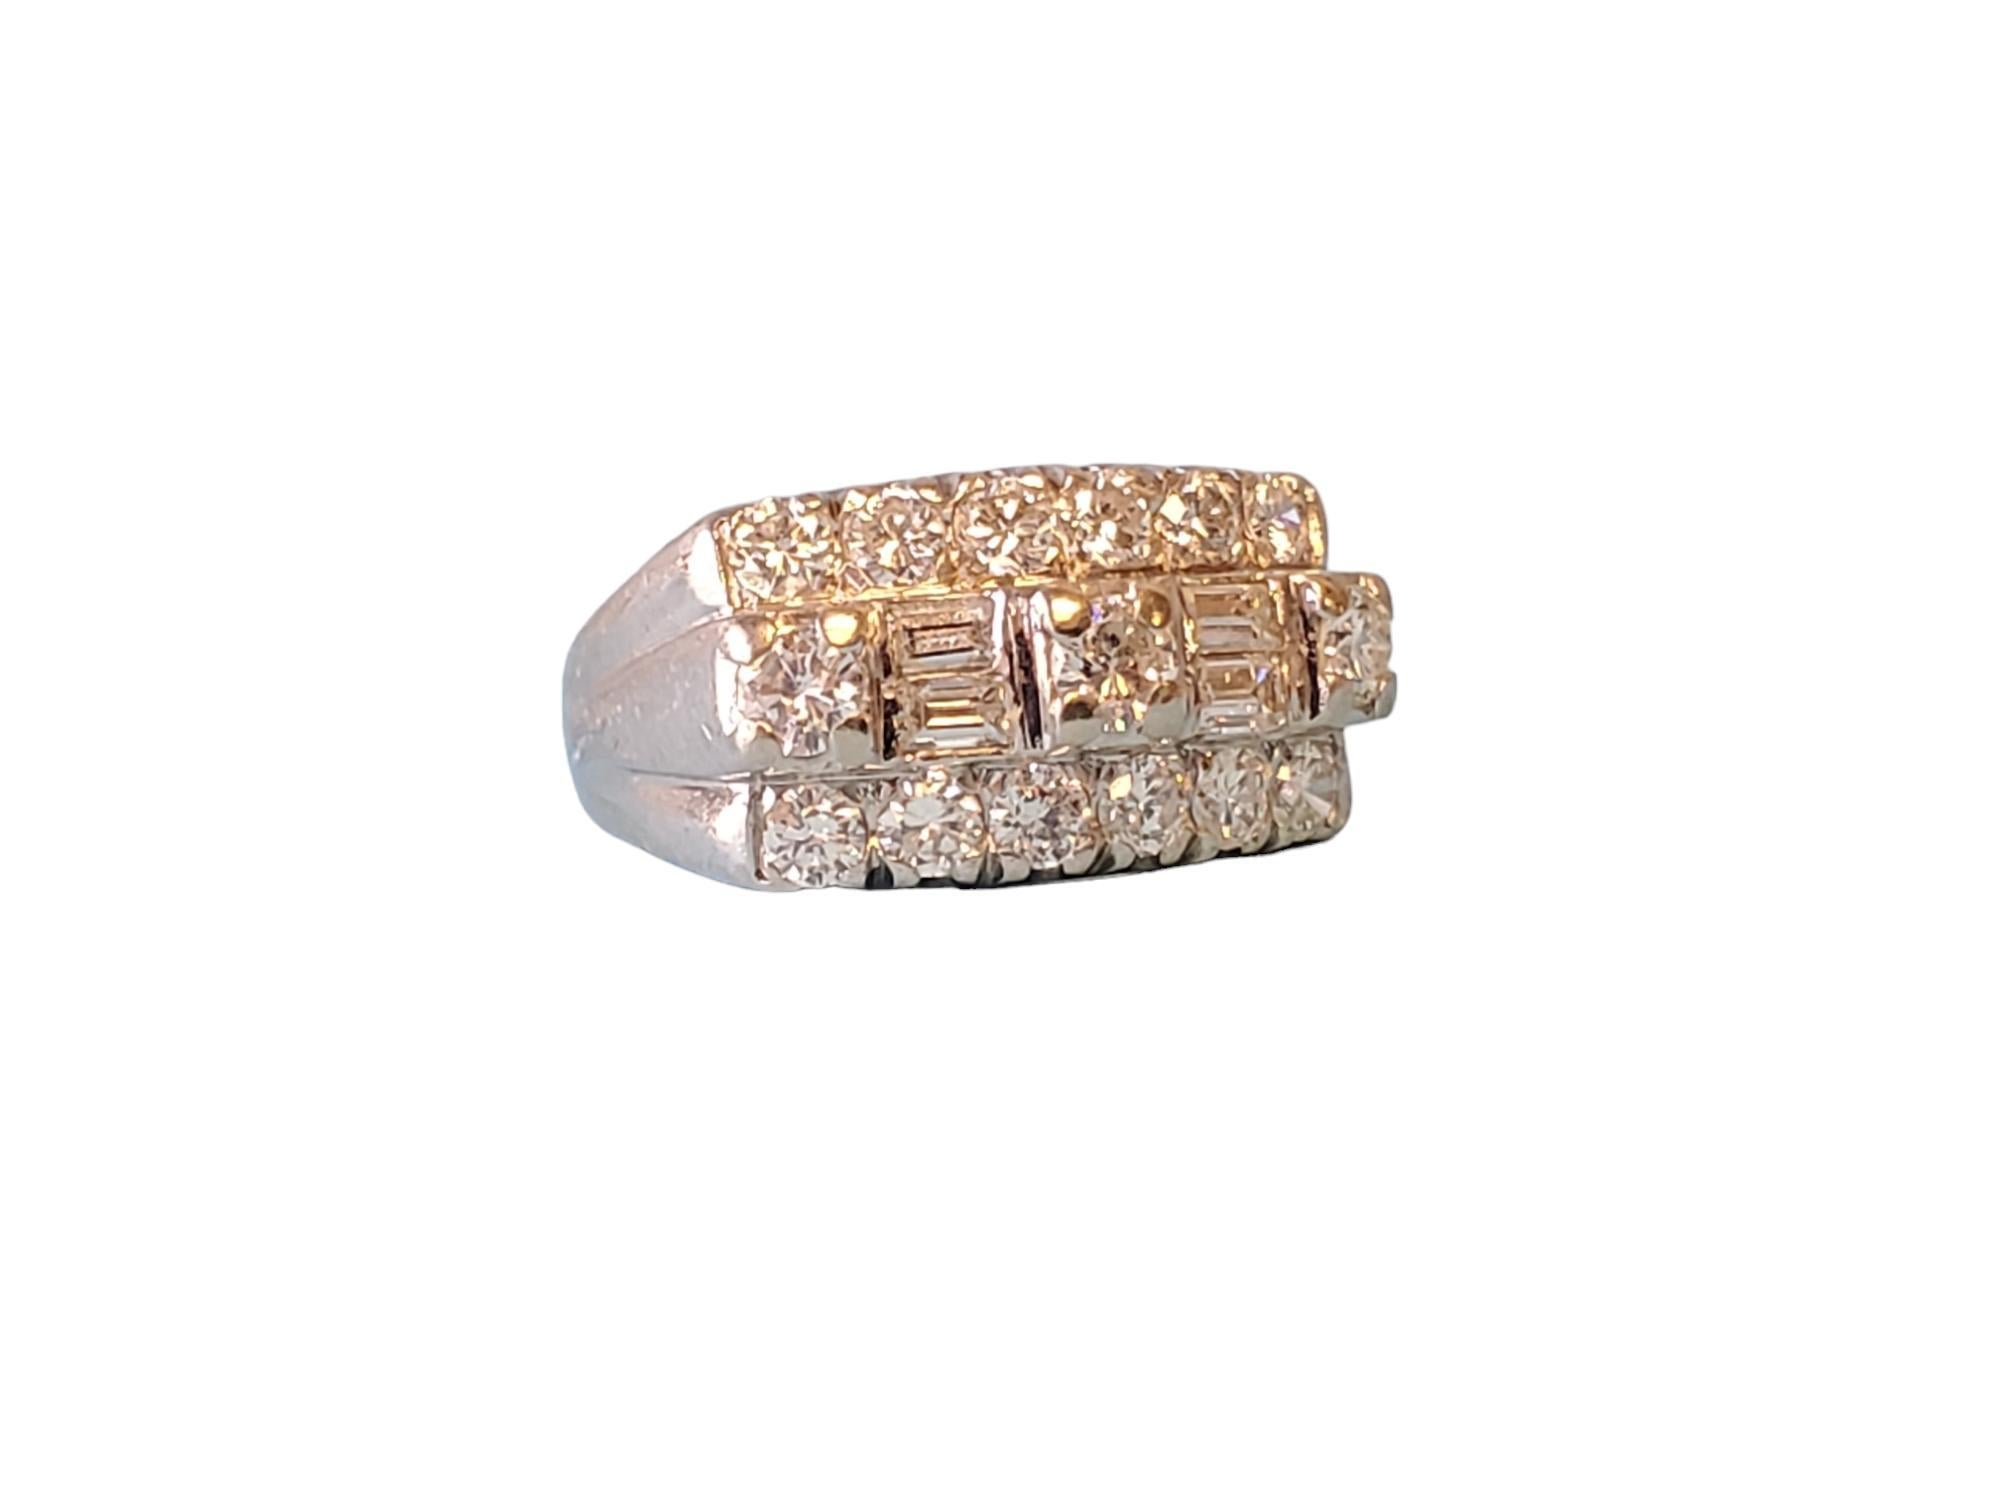 Vintage 14k 1,36ct Diamantring G VS-SI1 Diamanten

Aufgelistet ist eine fantastische Vintage 14k Weißgold Diamantband mit einem großen Blick. Die Diamanten in diesem Ring sind von hervorragender Qualität, G VS-SI1, weißer Brillant, funkelnde